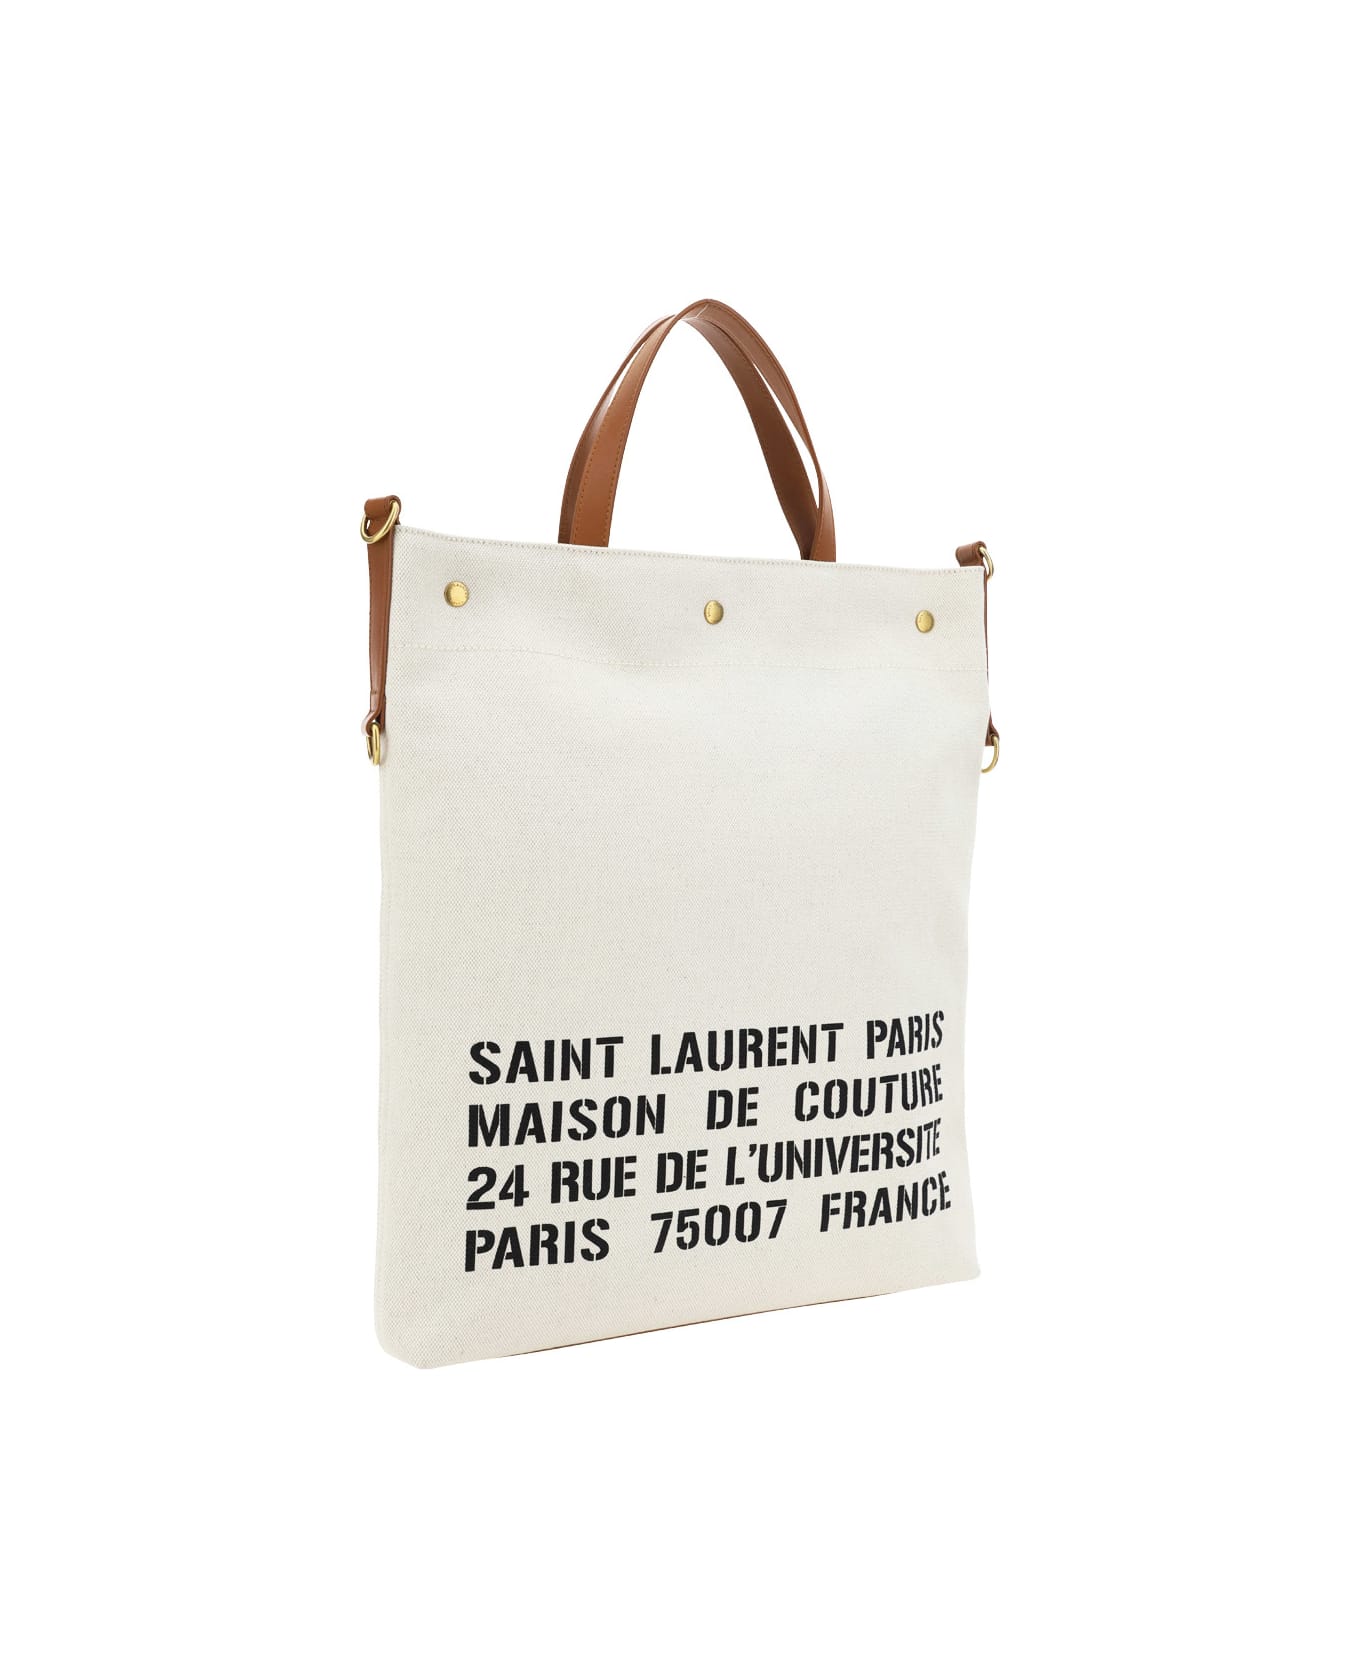 Saint Laurent Tote Travel Bag - Greggio/nero